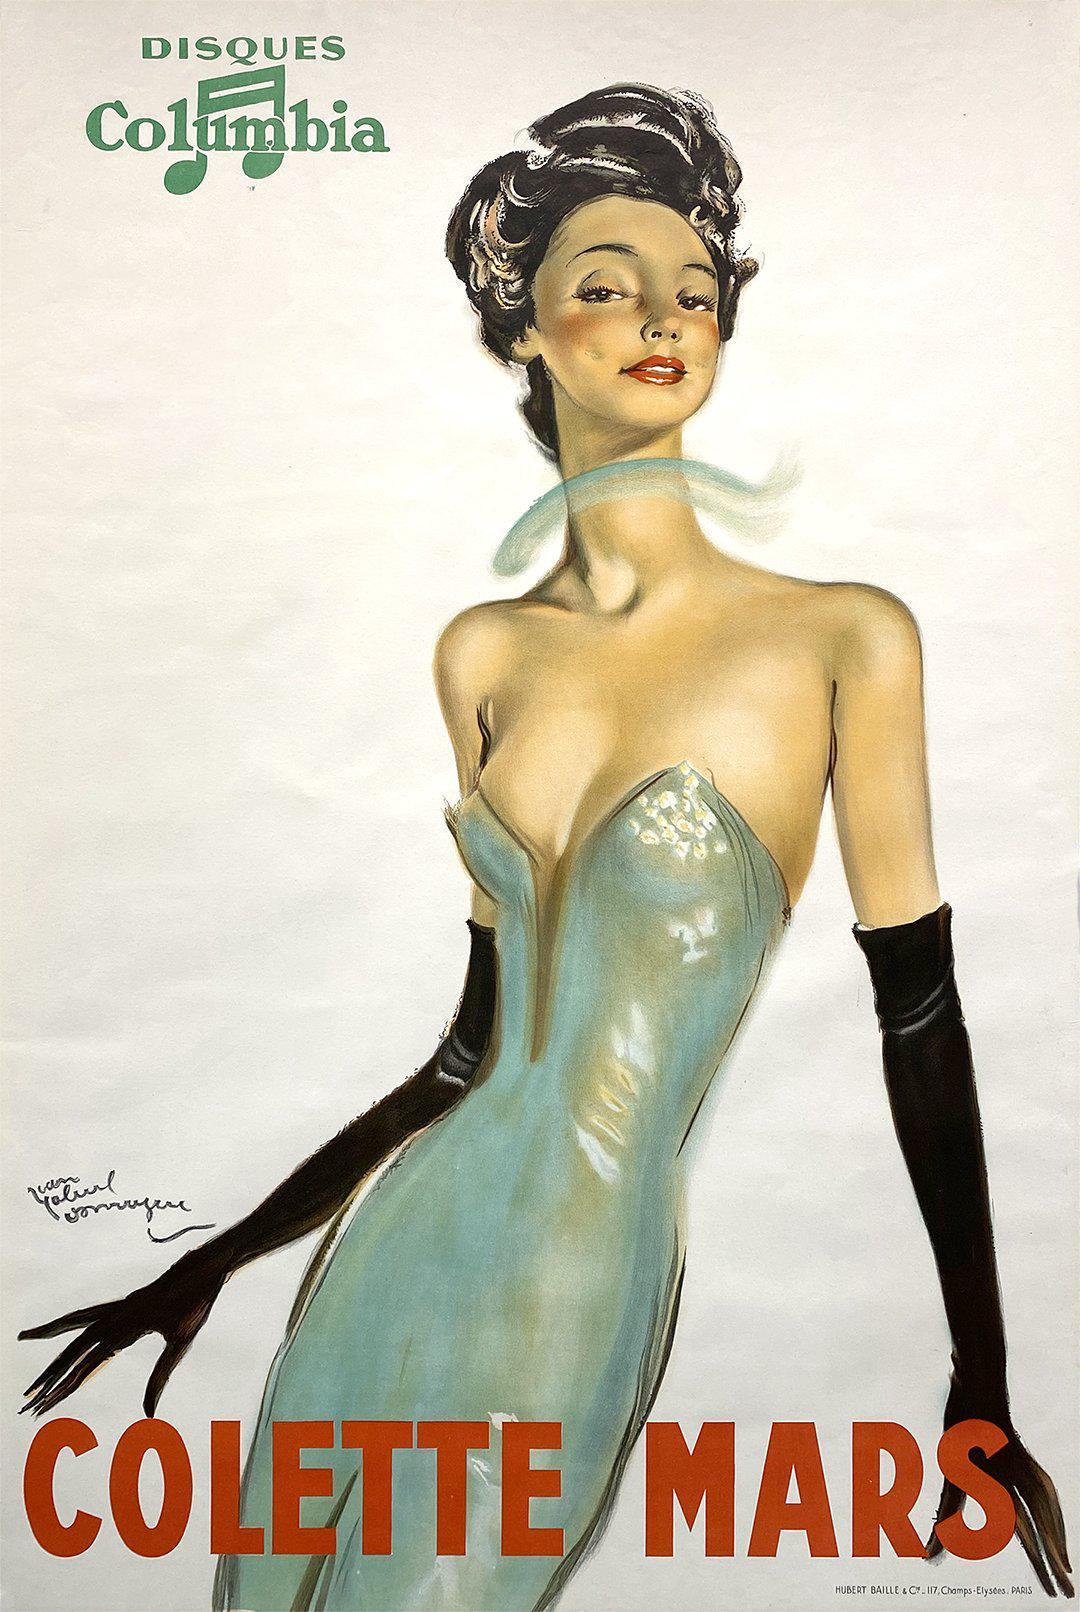 Original Vintage Colette Mars Record Poster by Jean Gabriel Domergue c1930 Columbia Disques